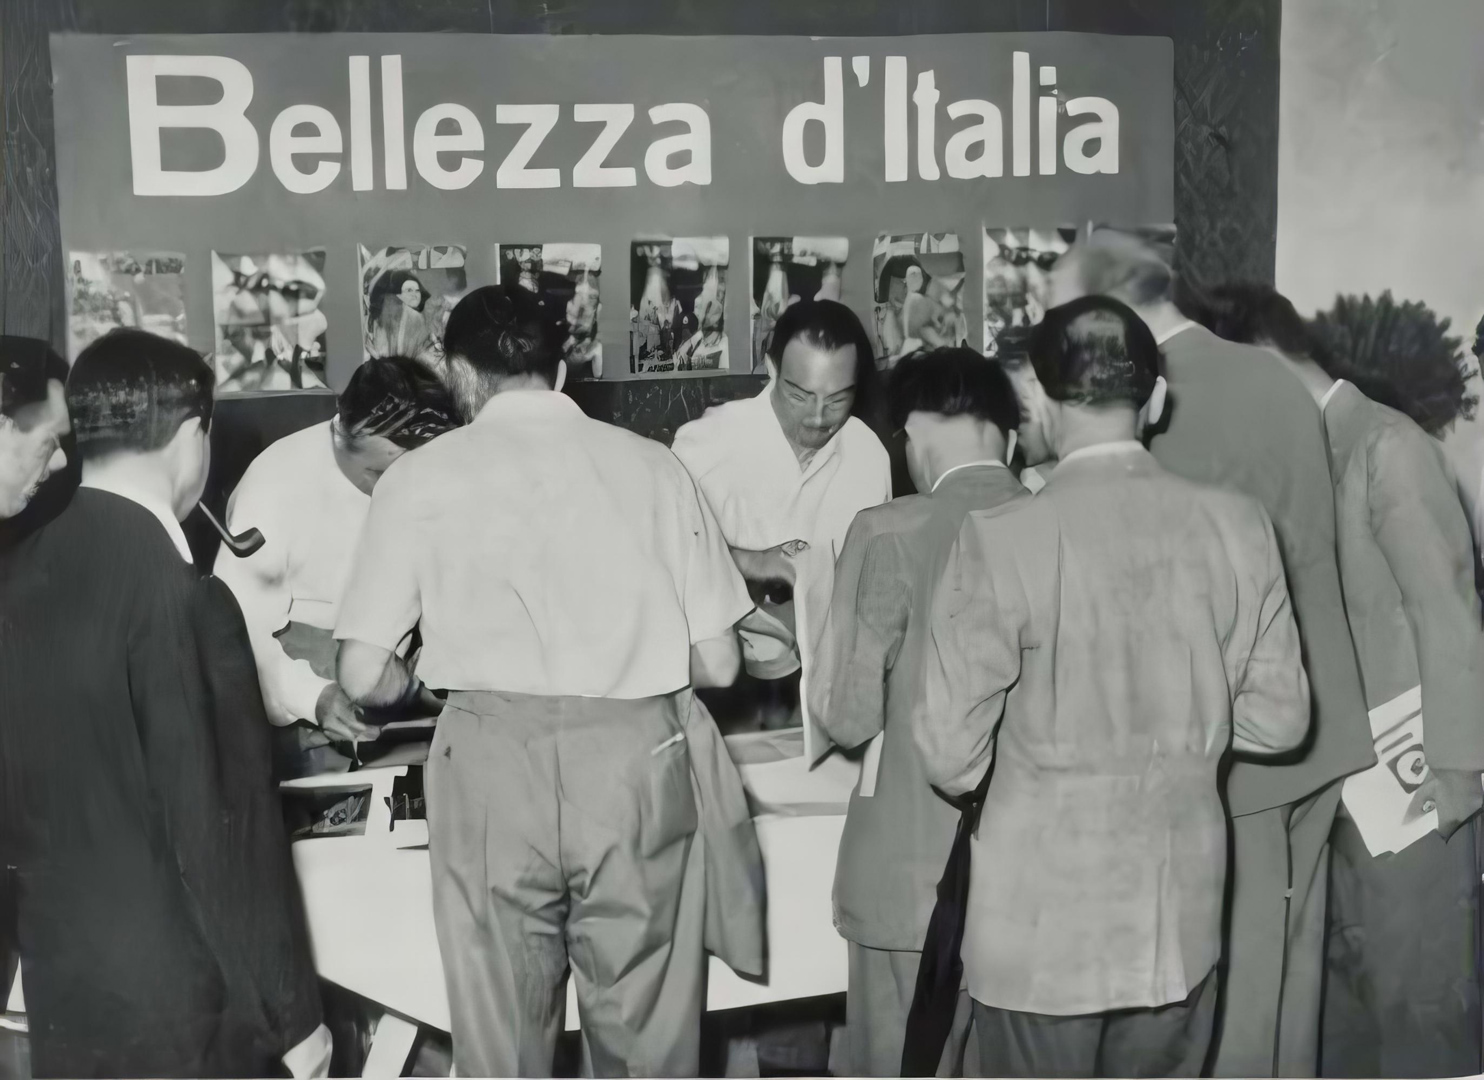 Bellezza d'Italia, Giornate mediche internazionali, Verona, 1950